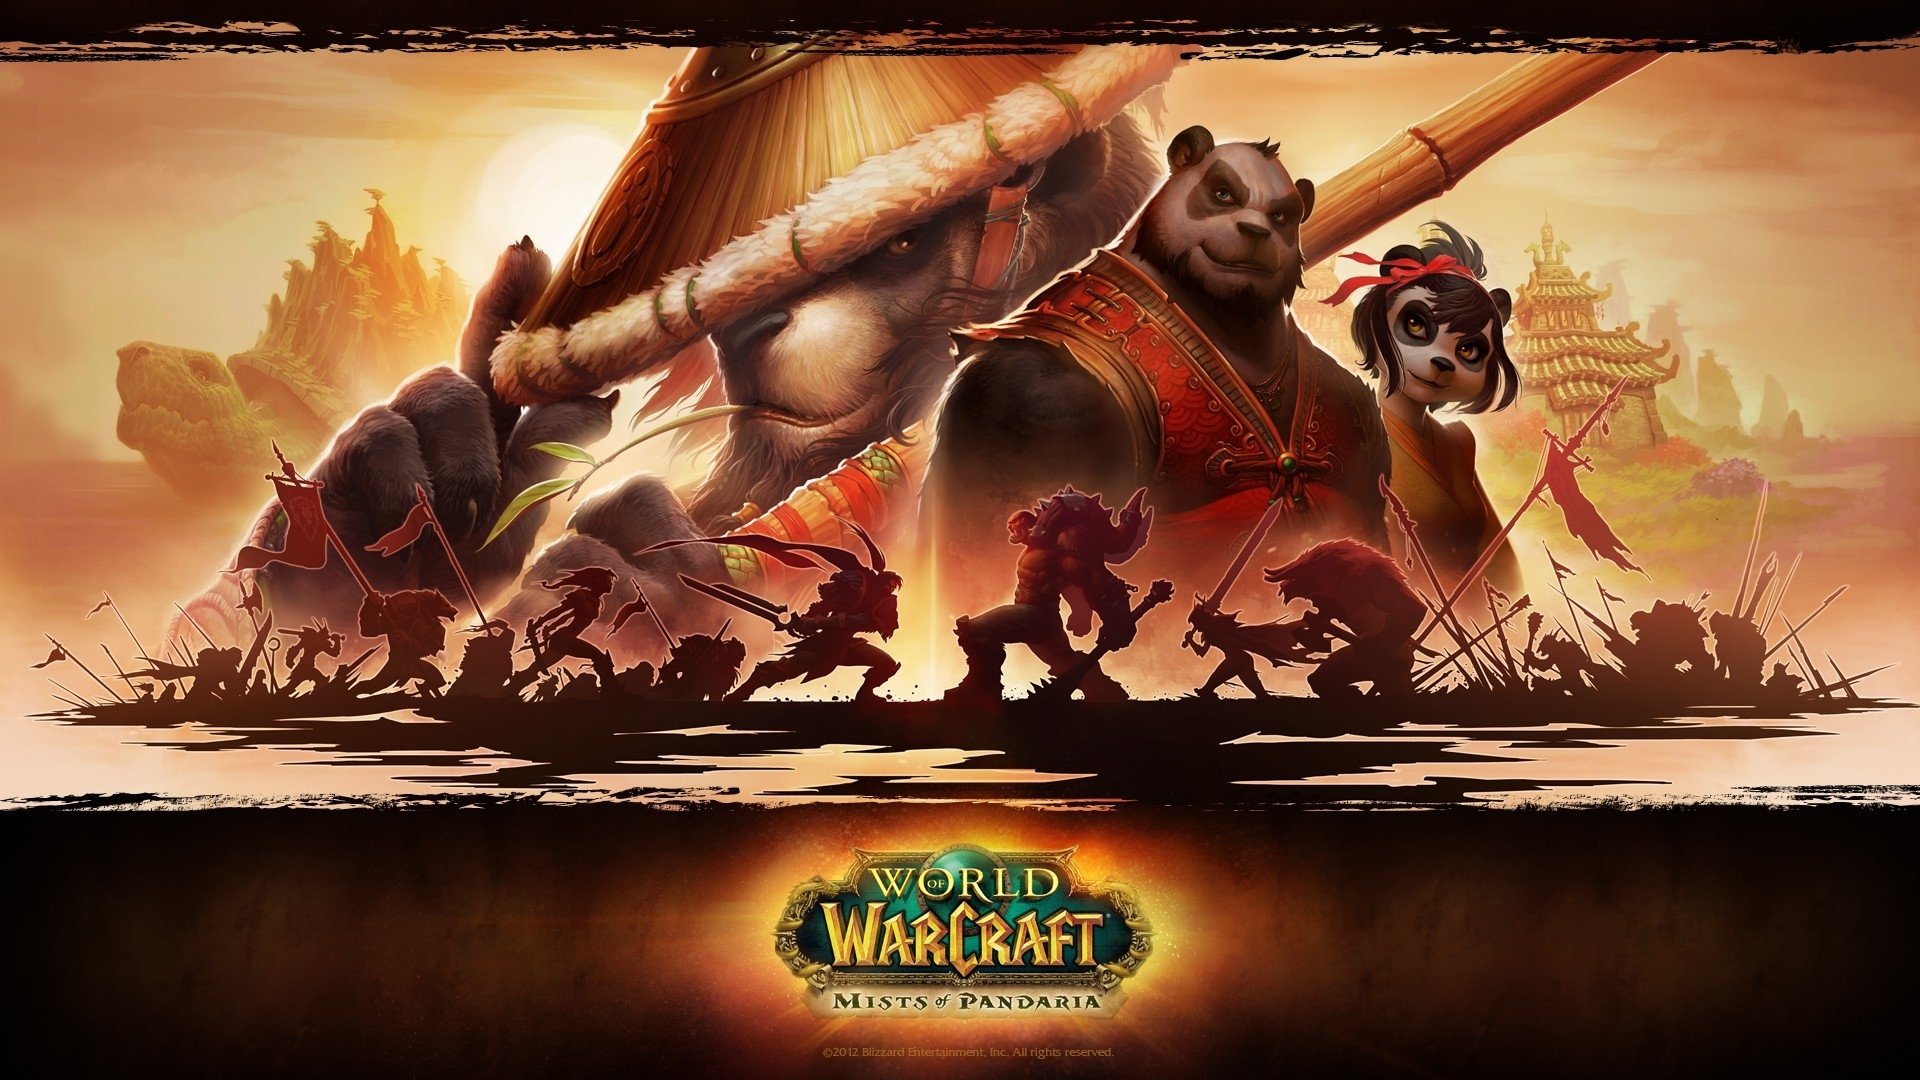 Best World Of Warcraft: Mists Of Pandaria wallpaper ID:105637 for High Resolution hd 1920x1080 desktop